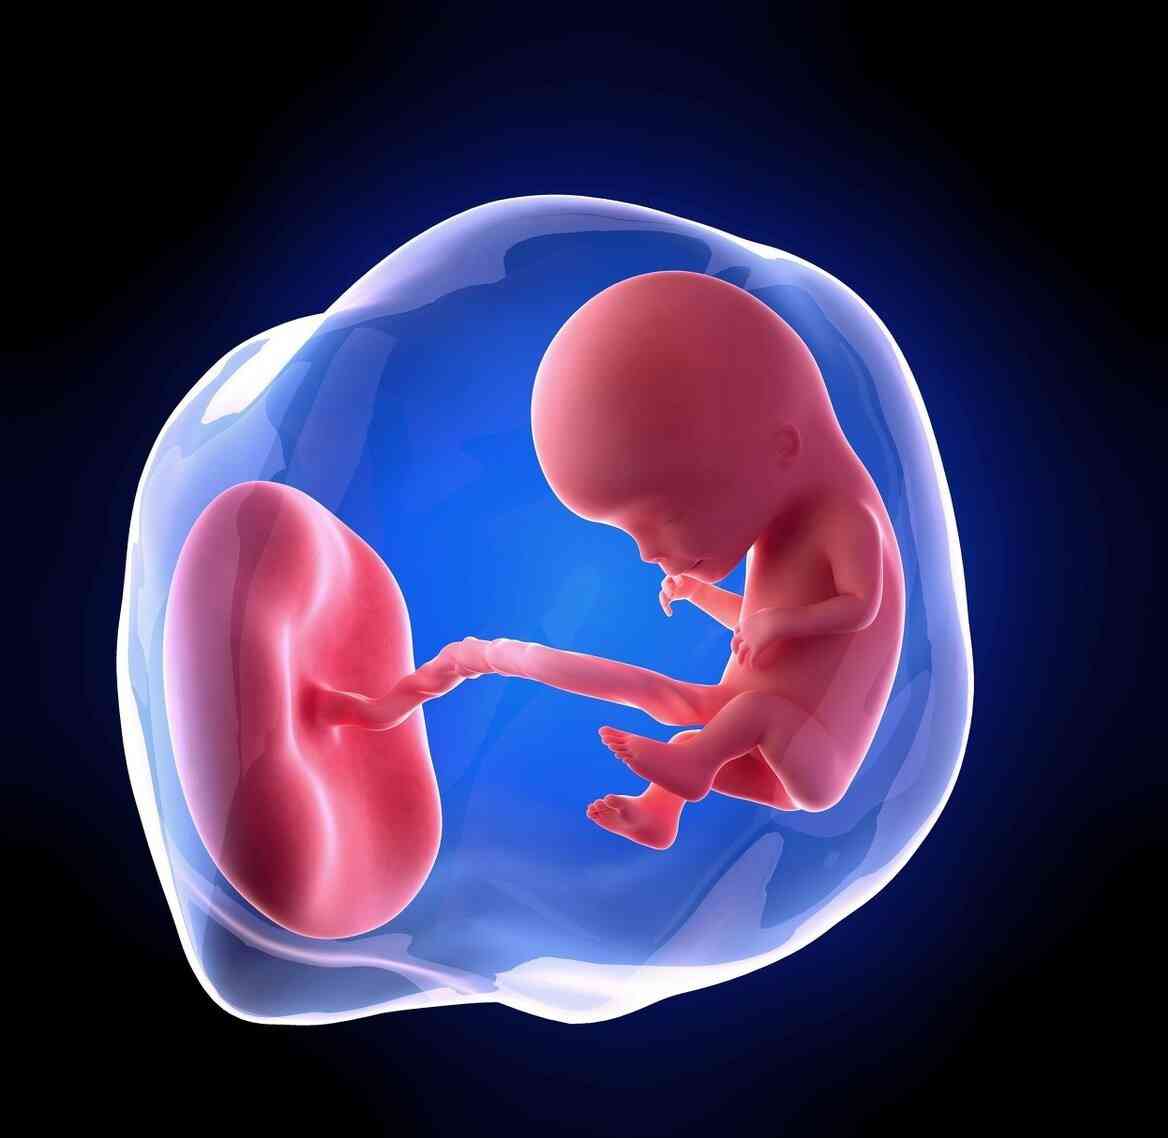 孕妇胆固醇偏高可能导致胎儿肥大